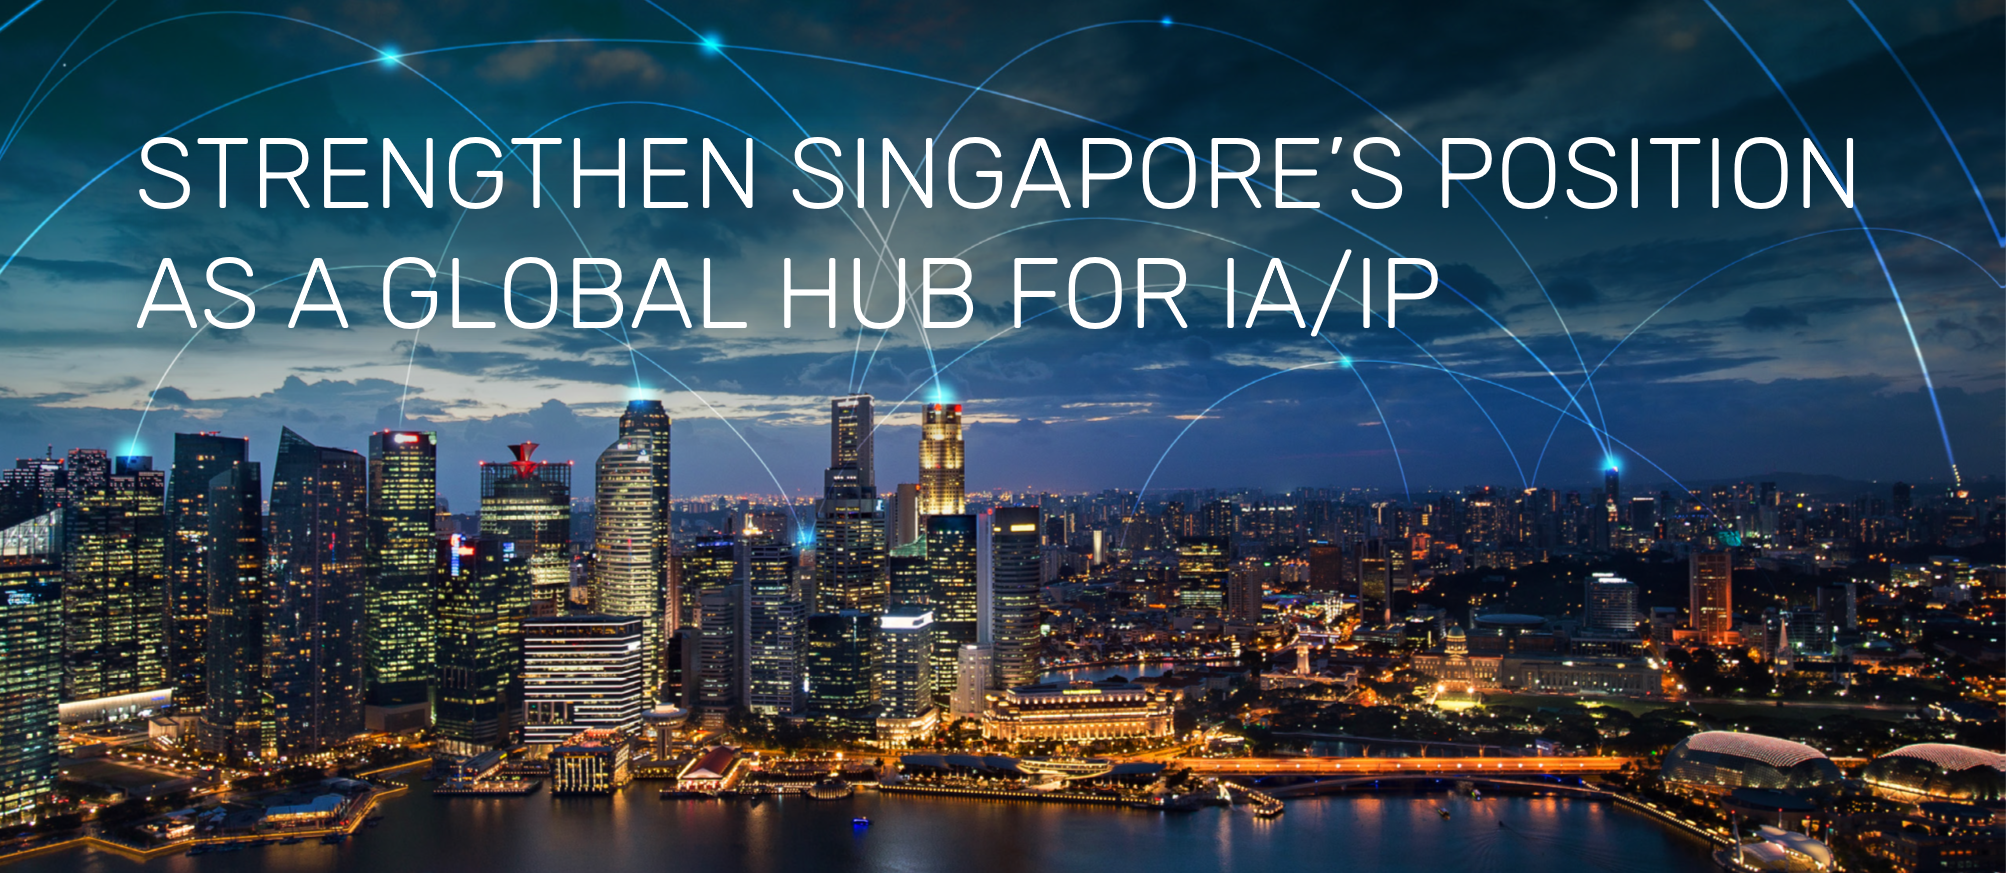 Singapore as a Global Hub for IA